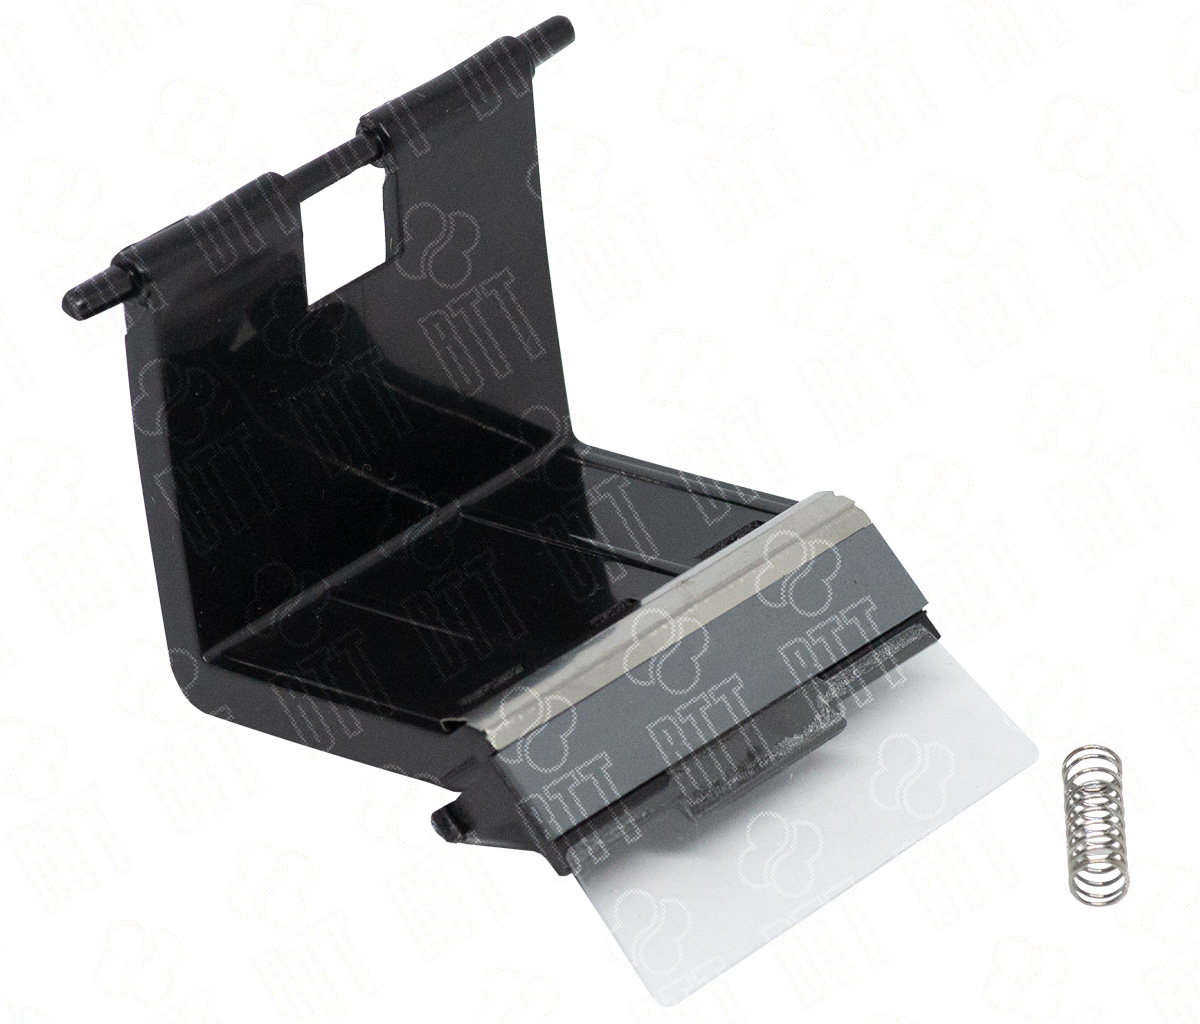 Тормозная площадка кассеты в сборе Hi-Black для SamsungML-2250/3050/SCX-4920N/PE120